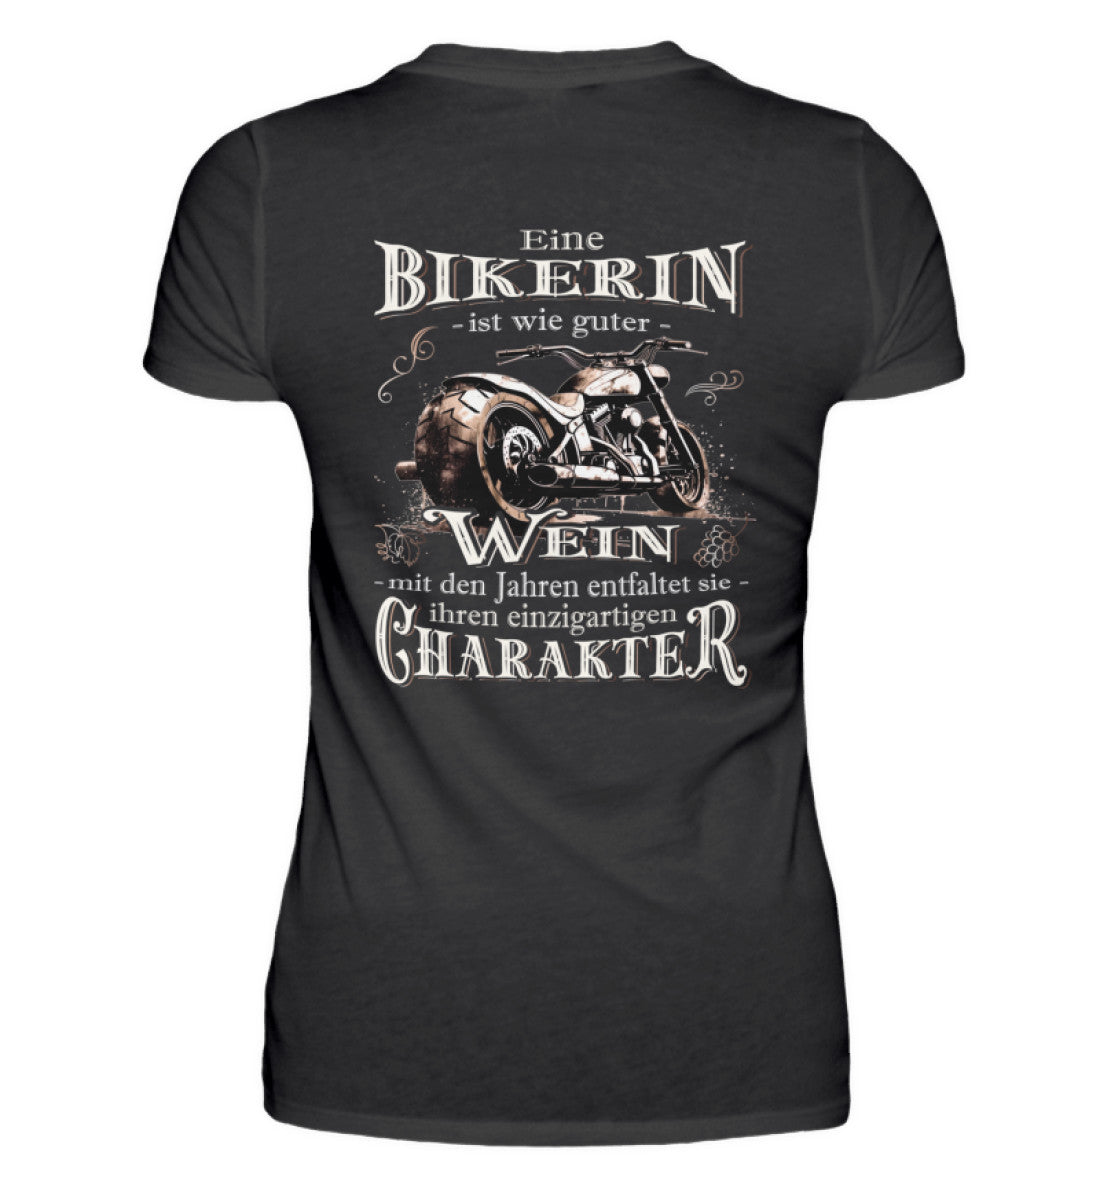 Ein Bikerin T-Shirt für Motorradfahrerinnen von Wingbikers mit dem Aufdruck, Eine Bikerin ist wie guter Wein - mit den Jahren entfaltet sie ihren einzigartigen Charakter - mit Back Print, in schwarz.